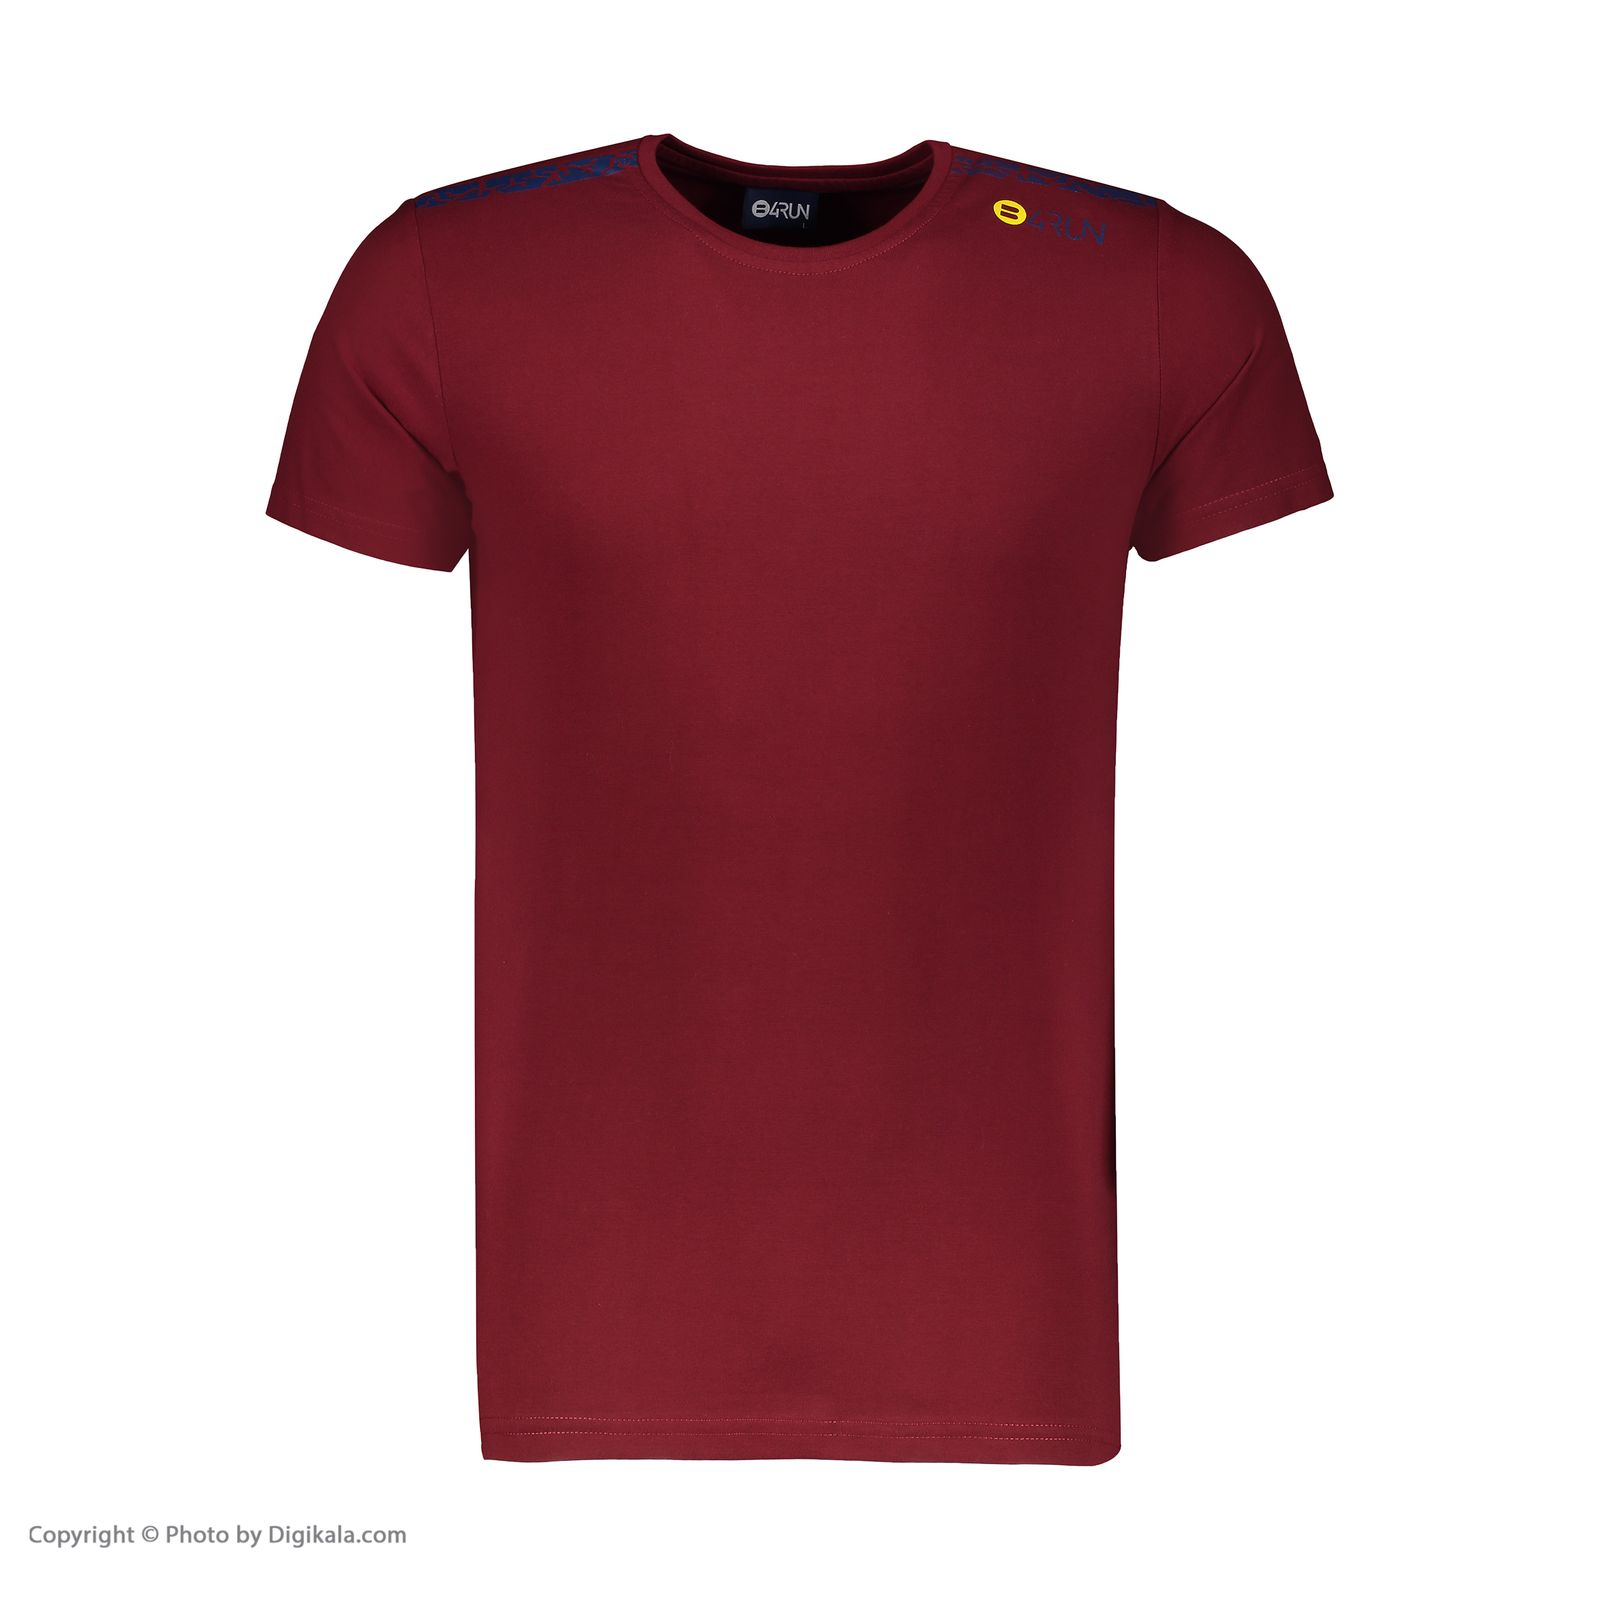 تی شرت ورزشی مردانه بی فور ران مدل 980318-74 - قرمز تیره - 2